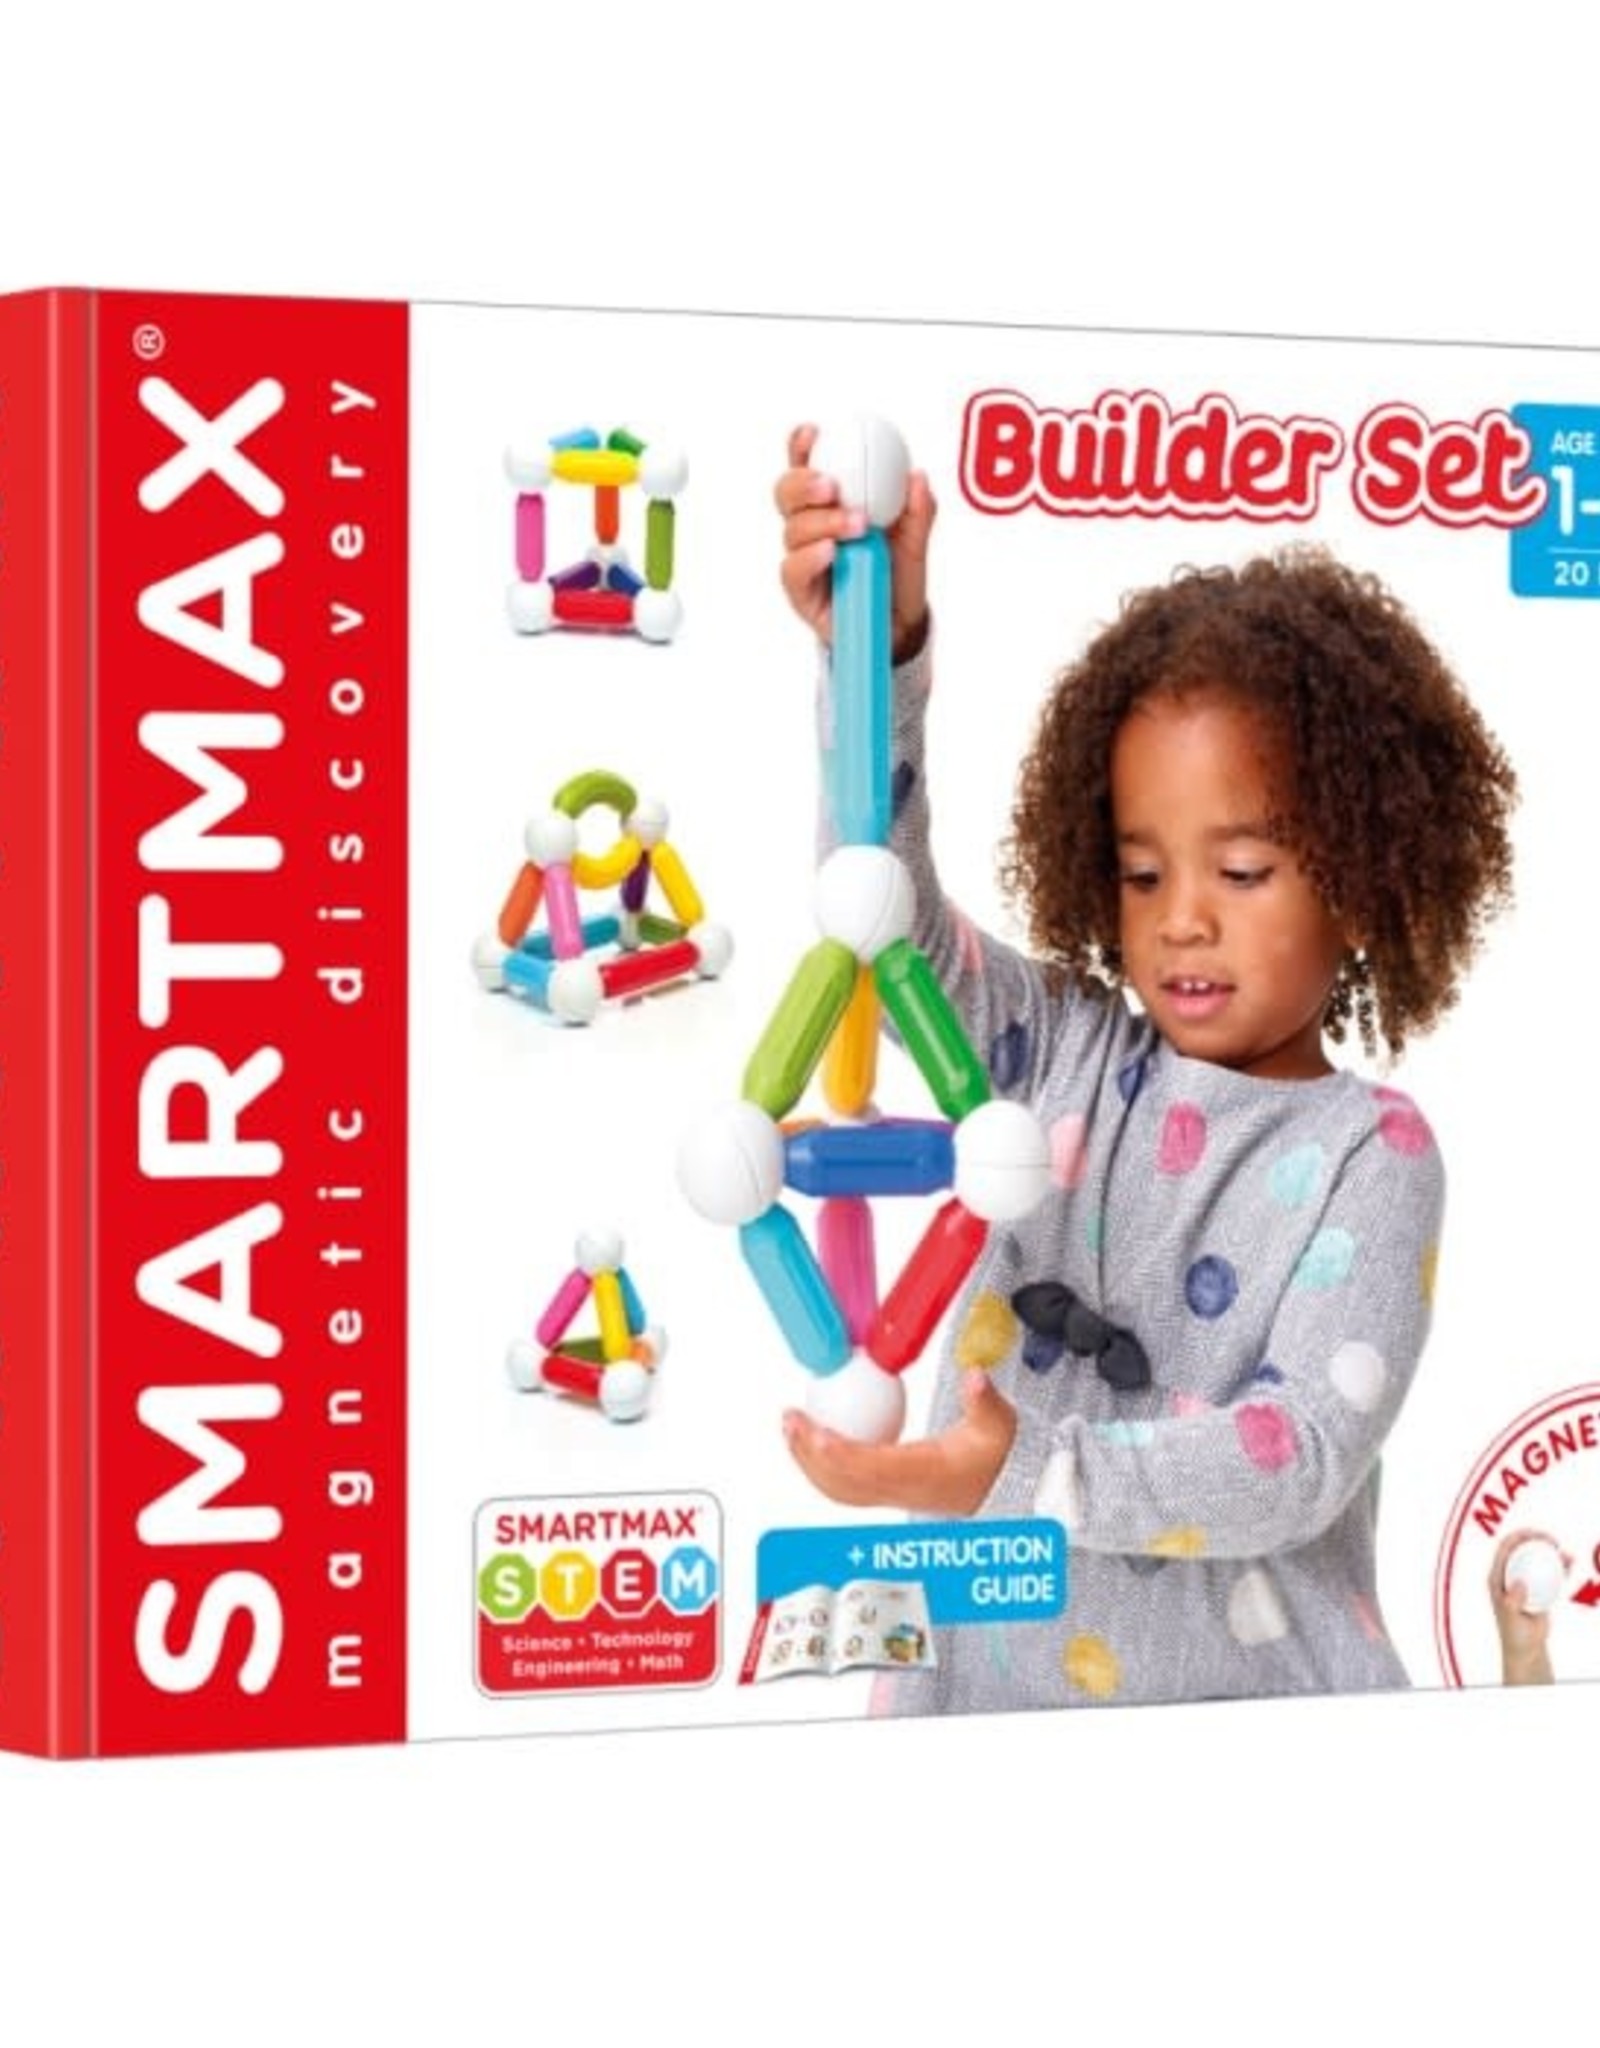 Smartmax Builder set